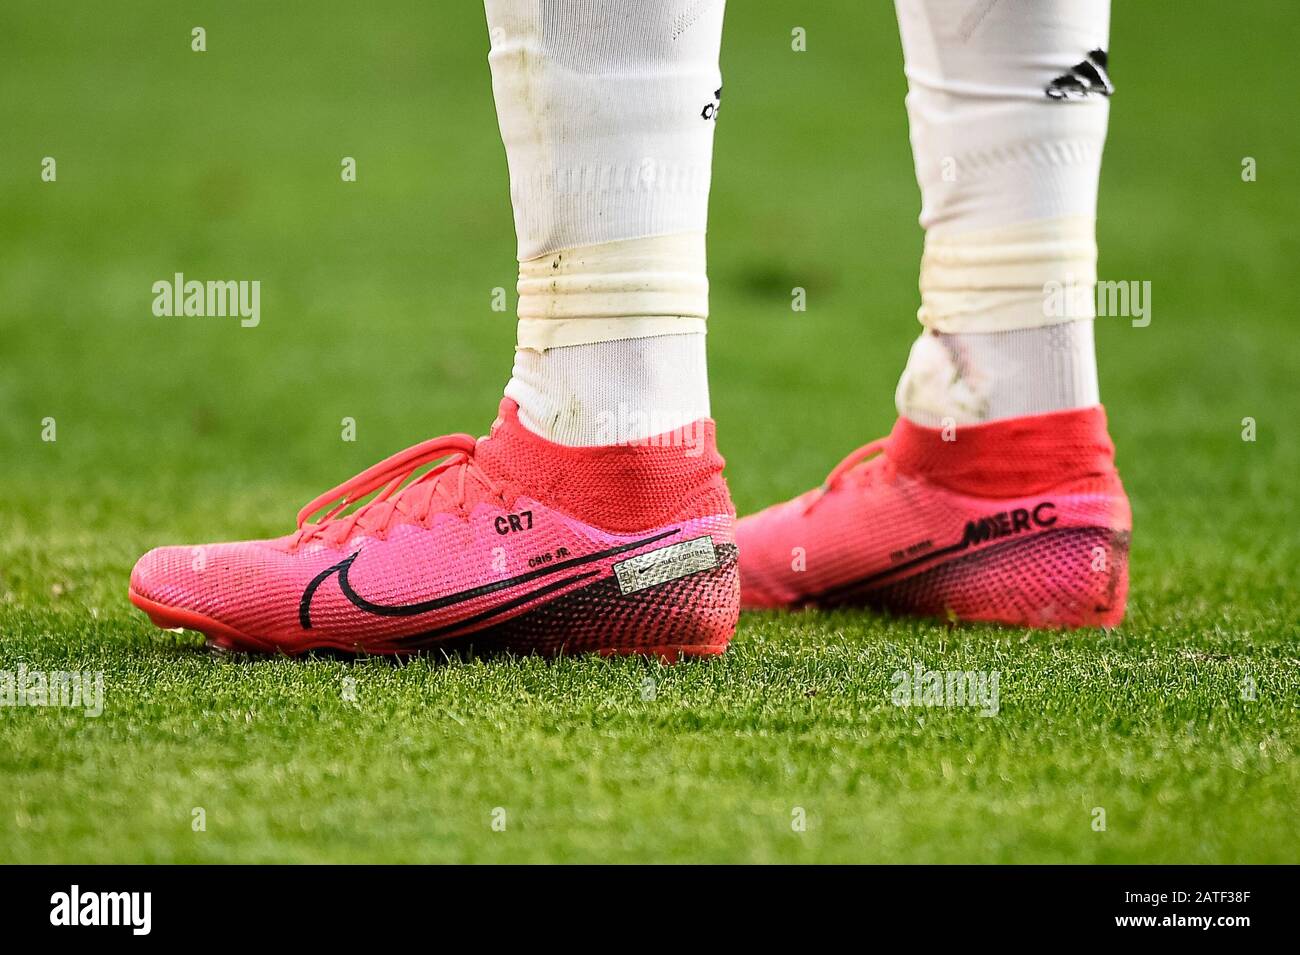 Torino, Italia - 02 Febbraio, 2020: Le scarpe da calcio Nike Mercurial  Superfly, indossate da Cristiano Ronaldo della Juventus FC, sono  raffigurate durante la serie A della partita di calcio tra Juventus